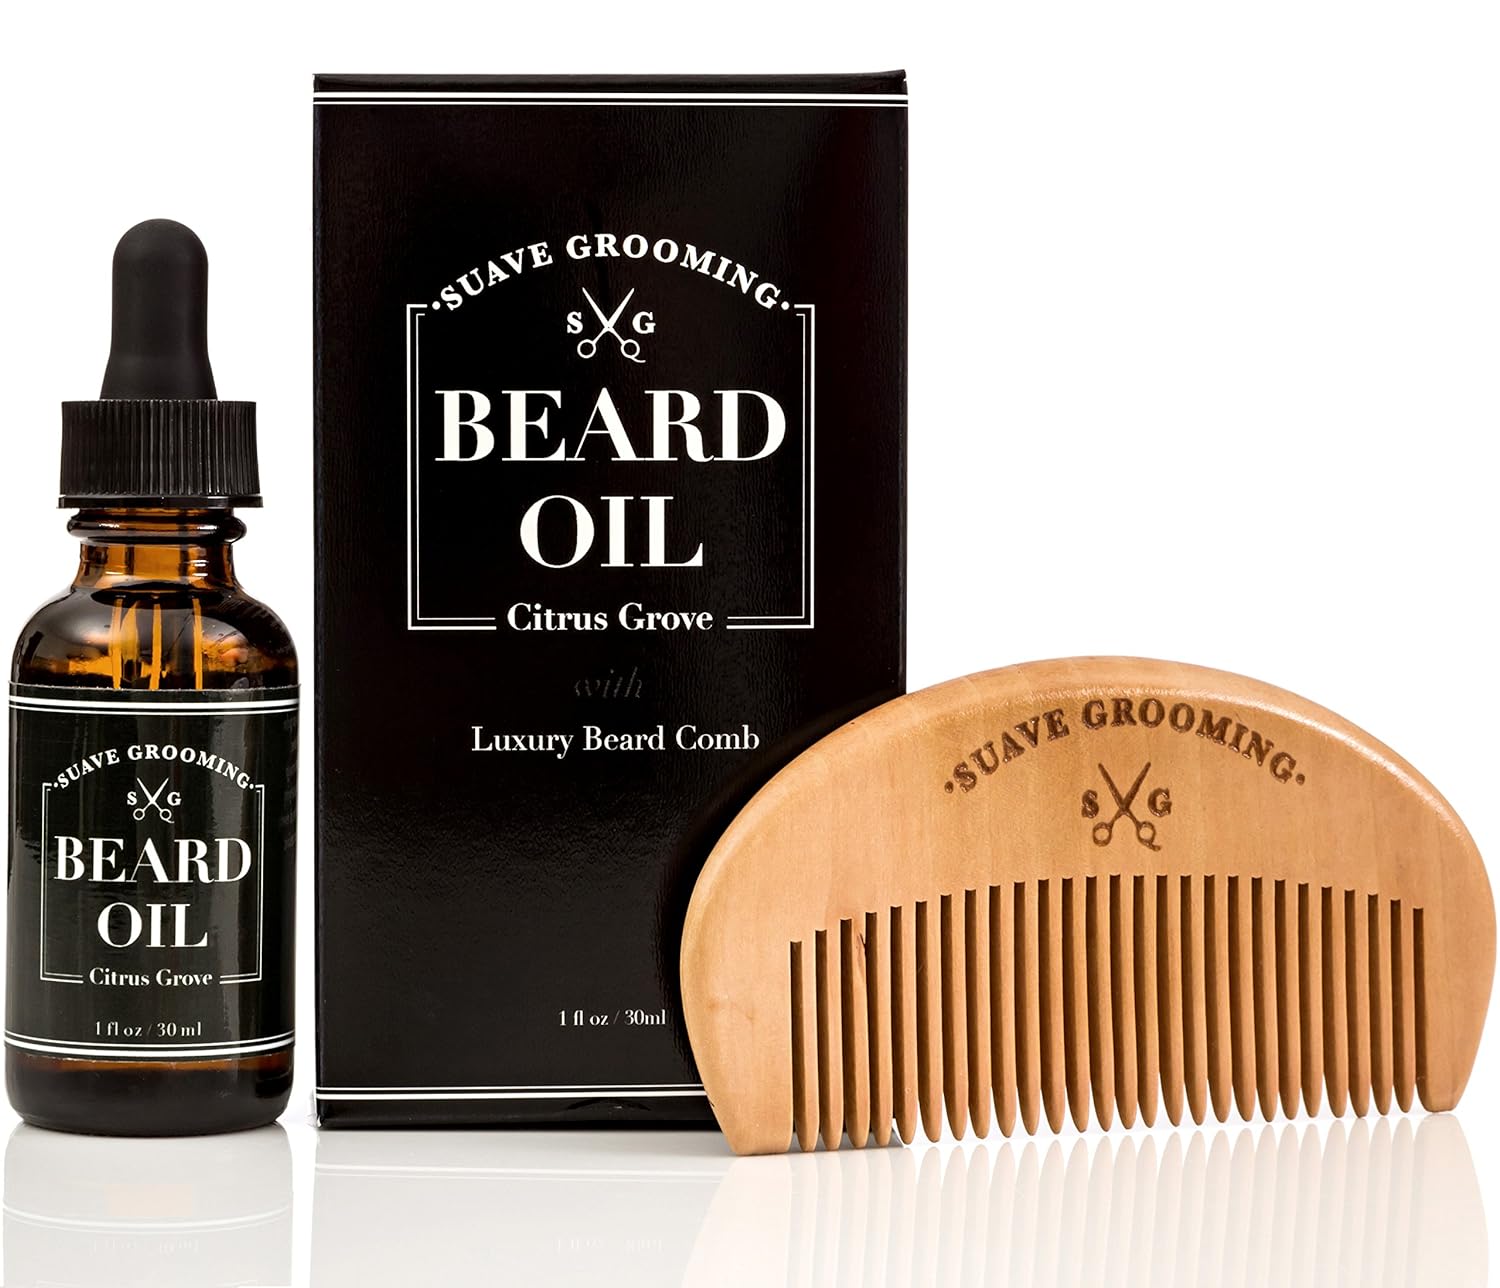 Does Beard Oil Help Growth?